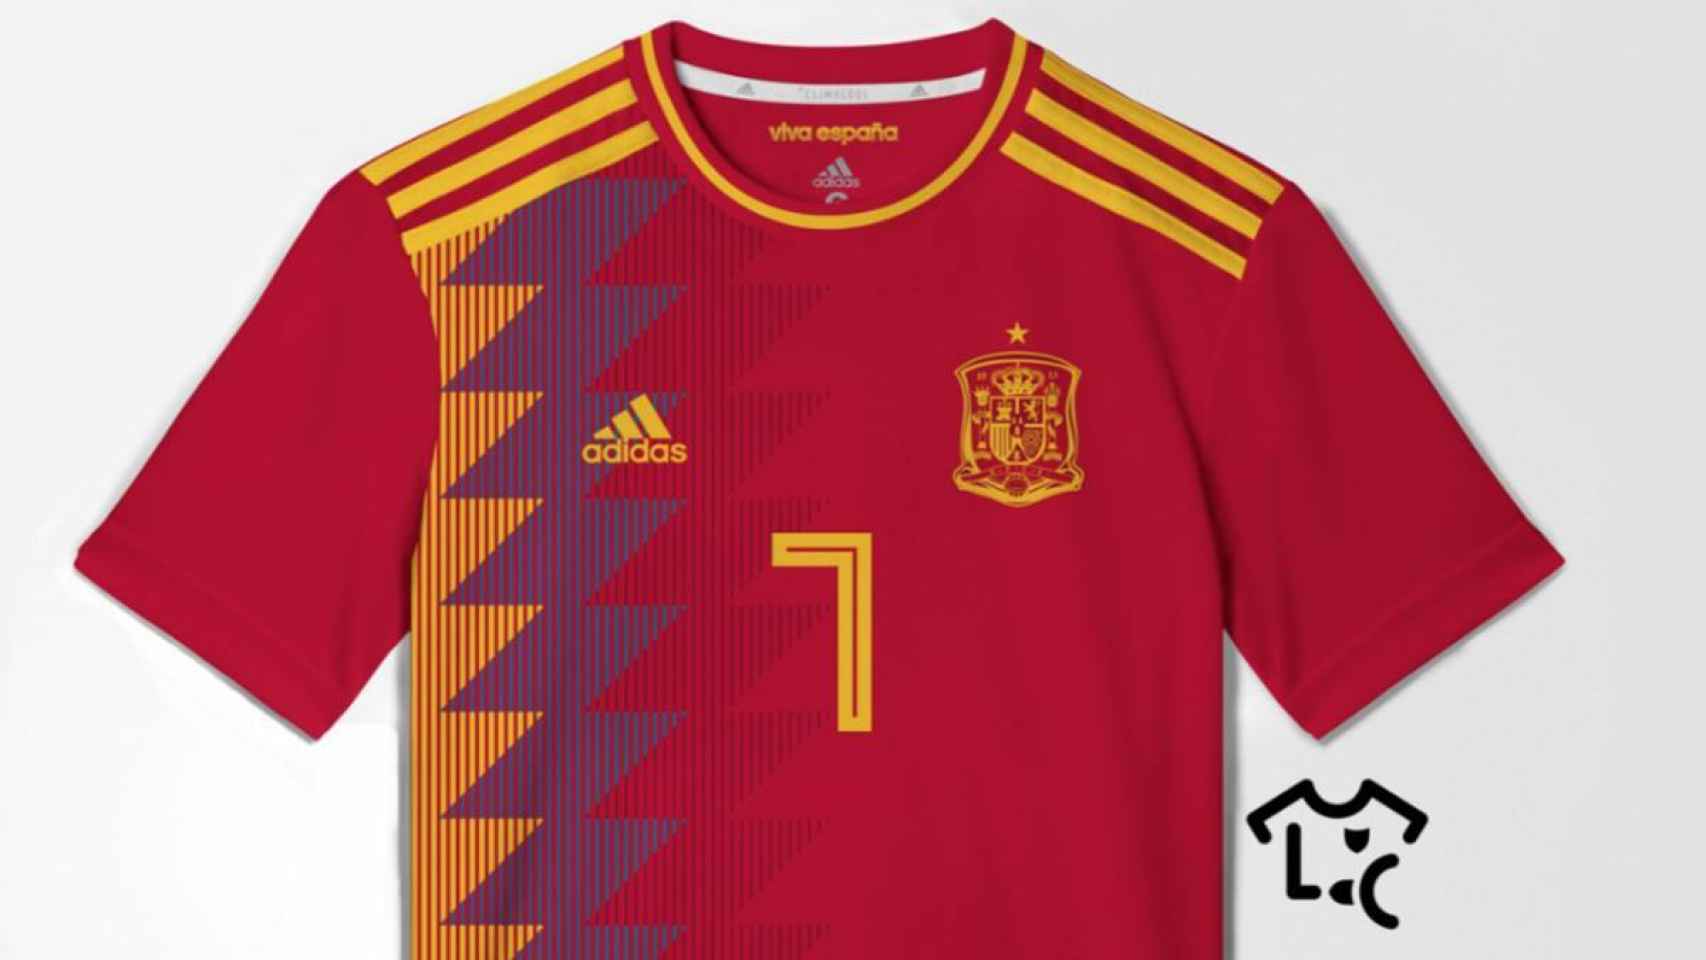 Se filtra posible camiseta de España para el Mundial de 2018… y es así de fea